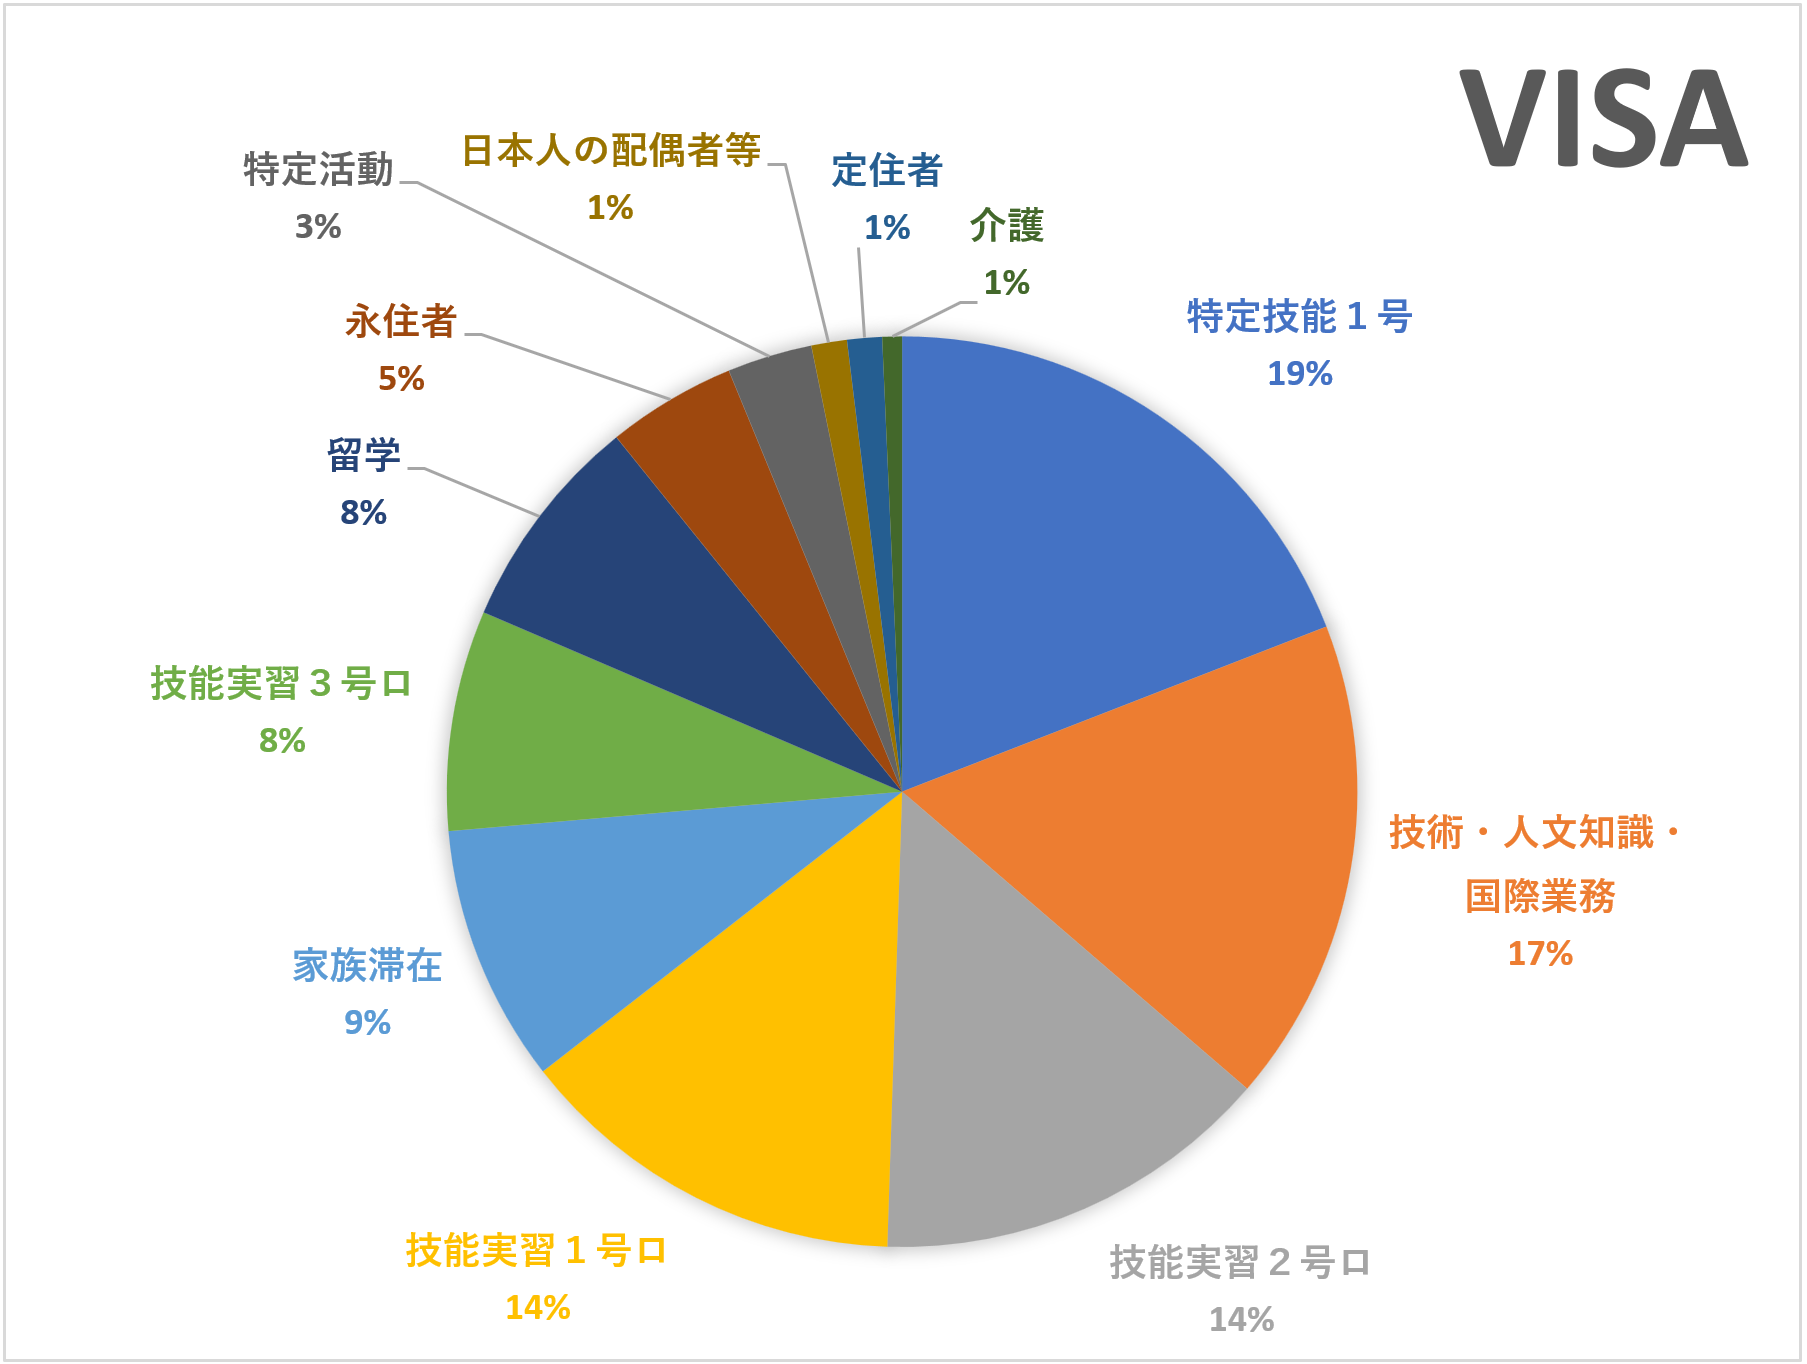 Phân bố người Việt tại Nhật theo Visa